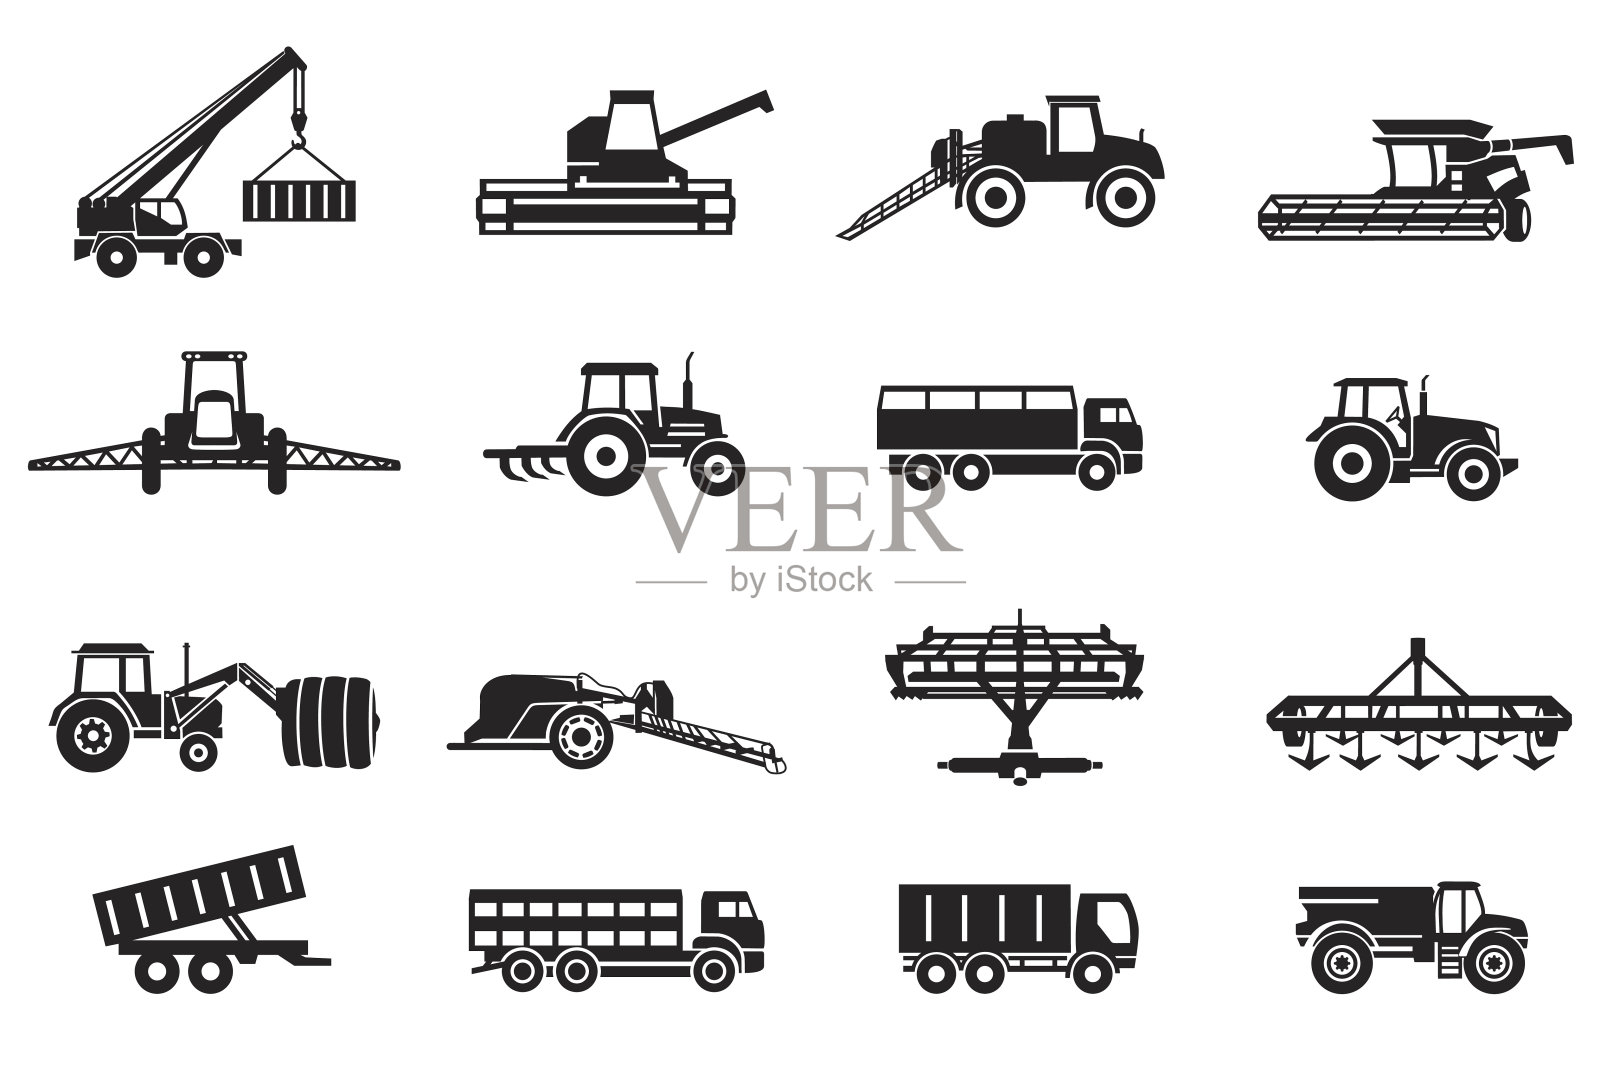 农业机械设备插画图片素材